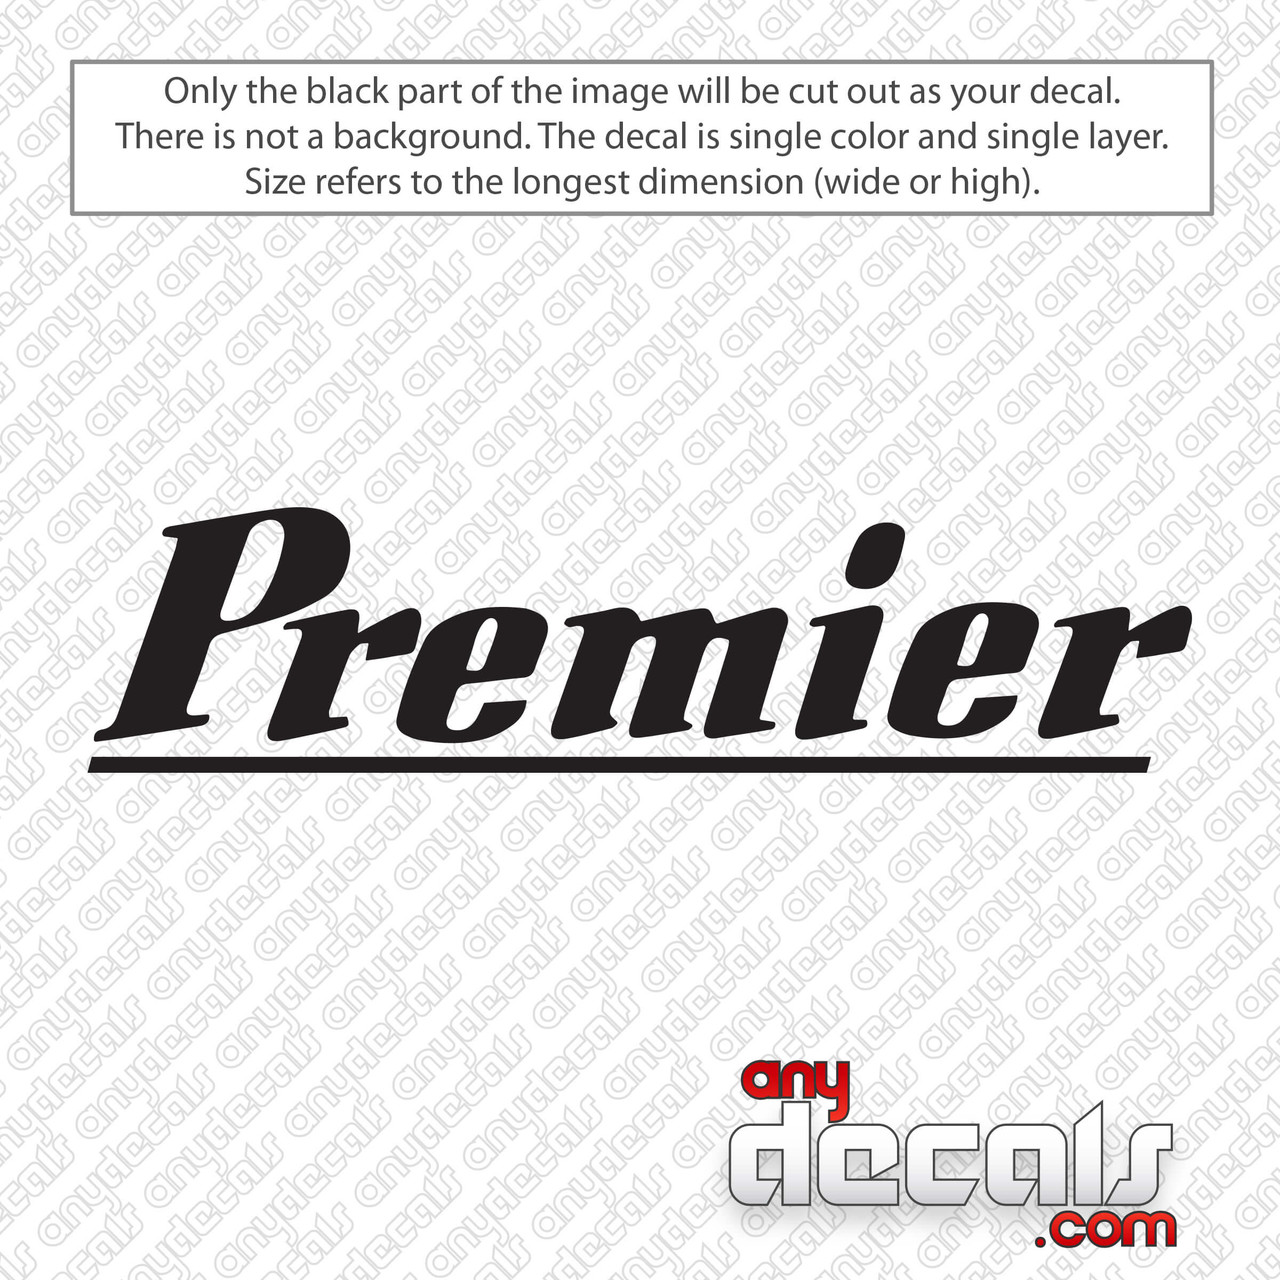 PREMIER DRUMS logo decal window vinyl sticker decal 14"